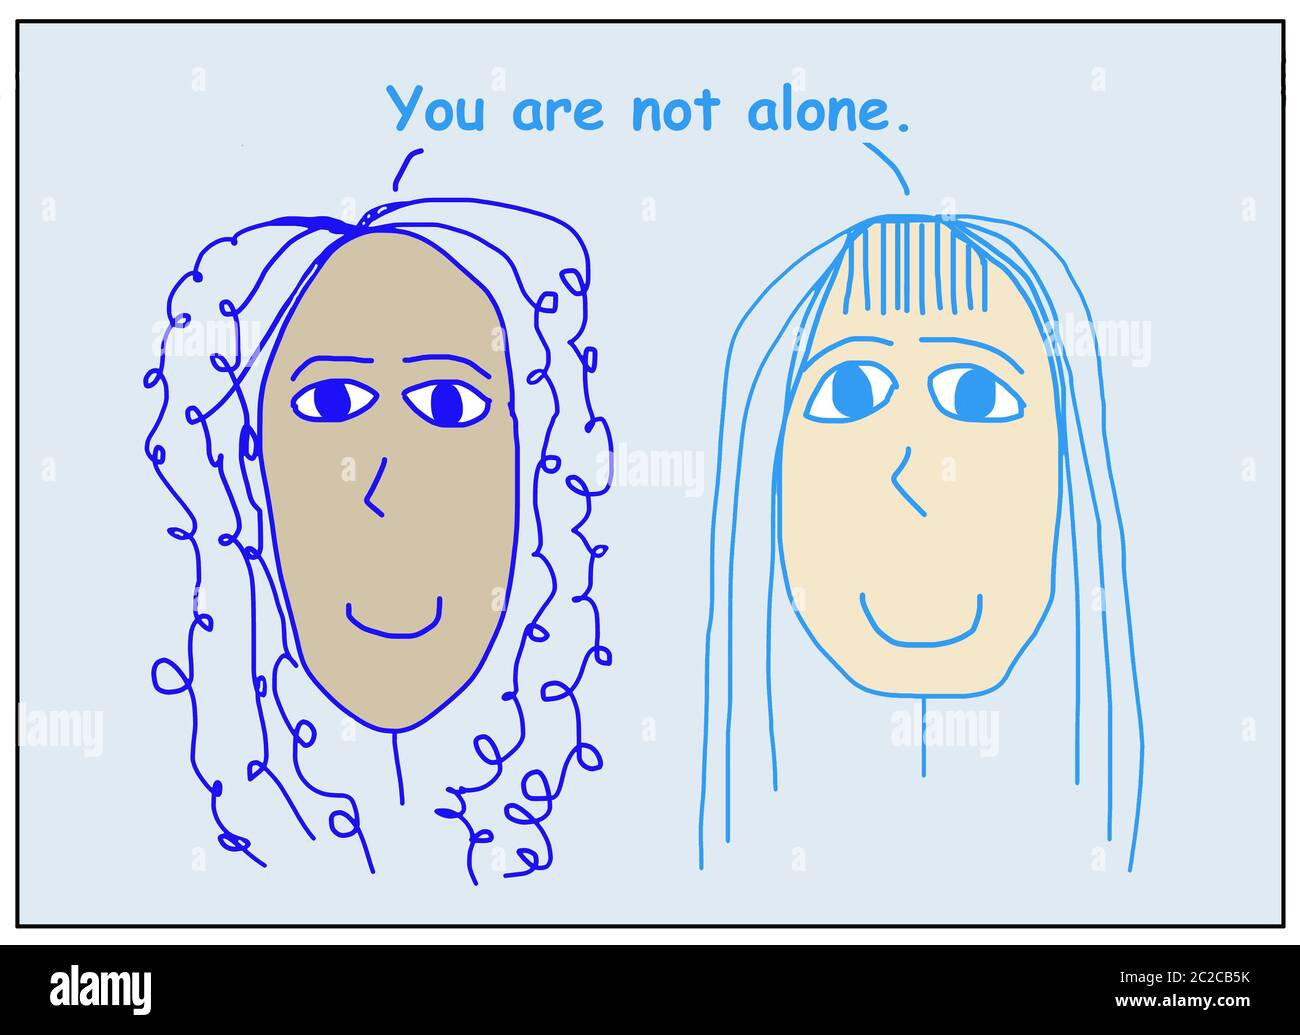 Farb-Cartoon von zwei lächelnden, schönen, ethnisch verschiedenen Frauen, die Sie nicht allein sind. Stockfoto